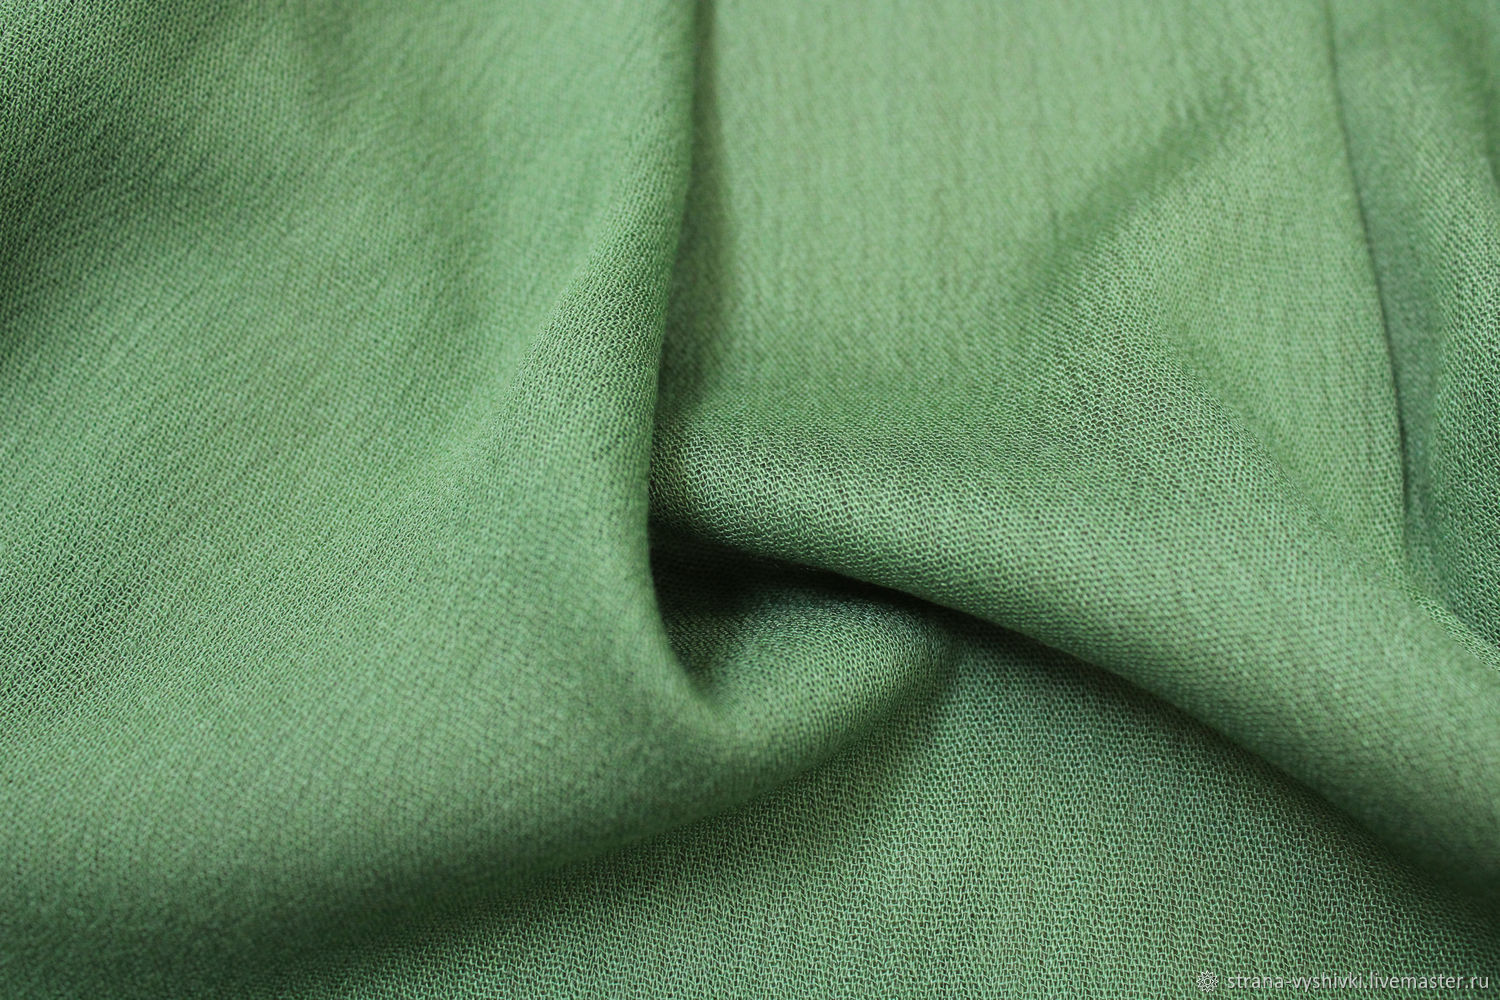 Хлопок зеленого цвета. Tu003400n креп зеленый 42*42. Хлопок ткань зеленая. Хлопок креп фактурный. Зеленый креп.